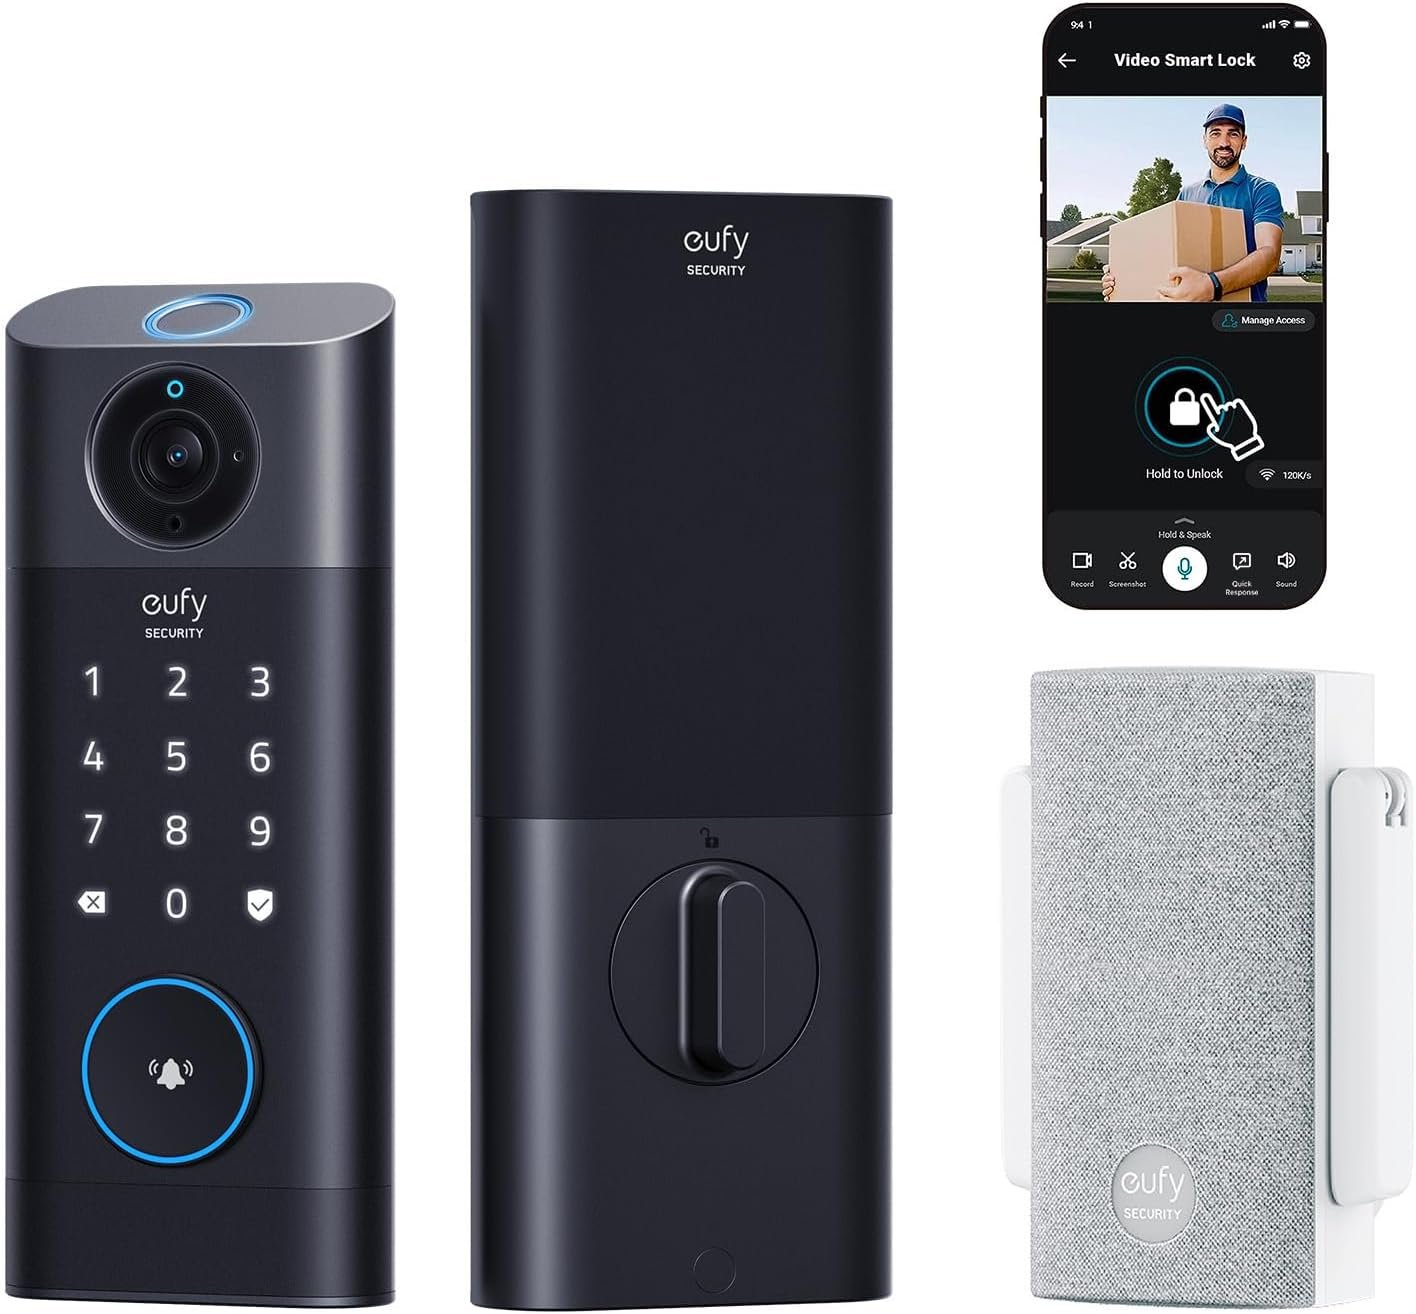 Eufy Video Smart Lock